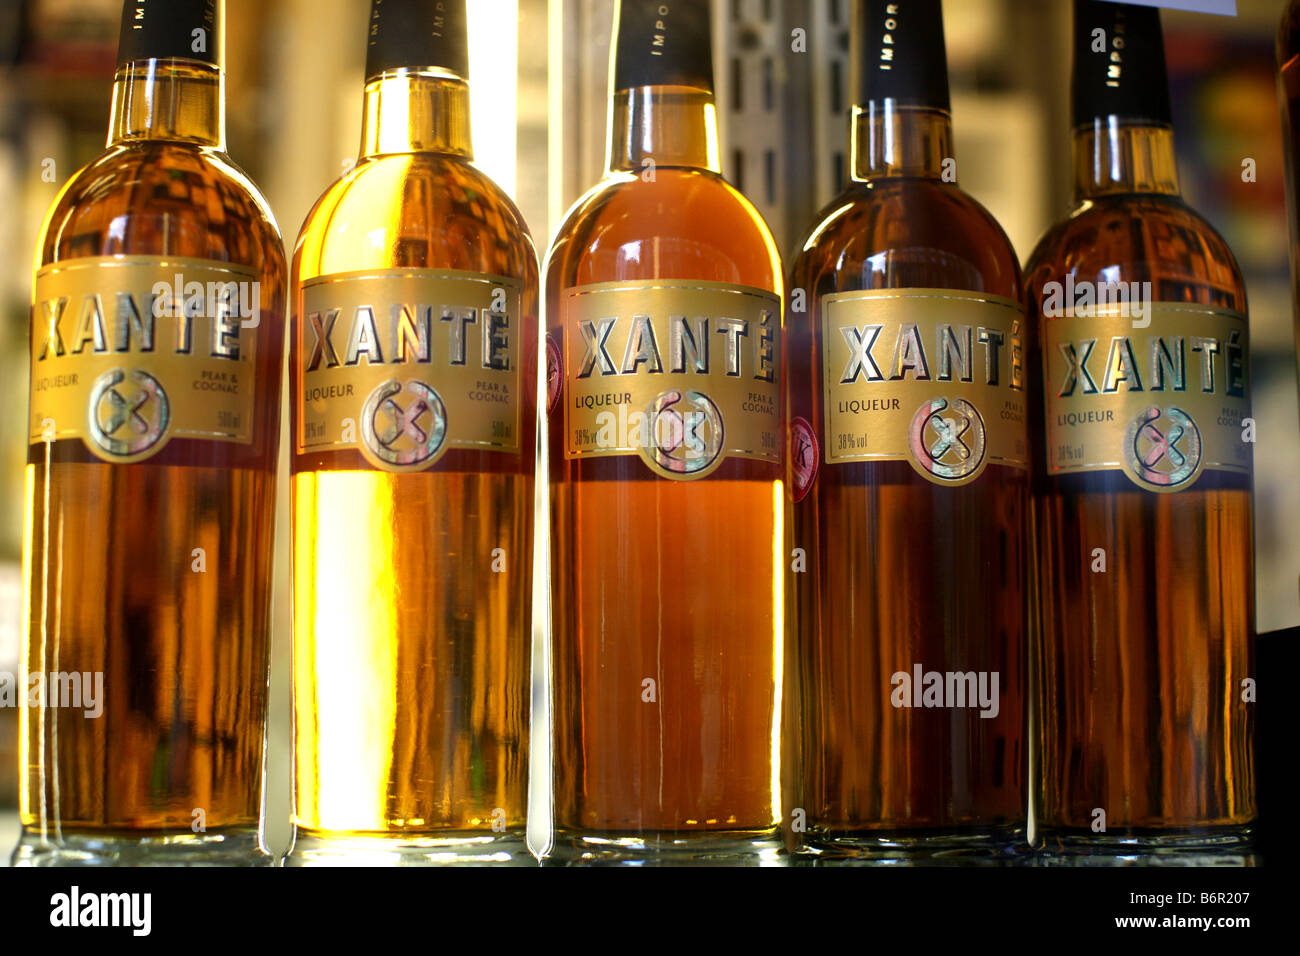 Bouteilles de liqueur de poire cognac Xante Photo Stock - Alamy